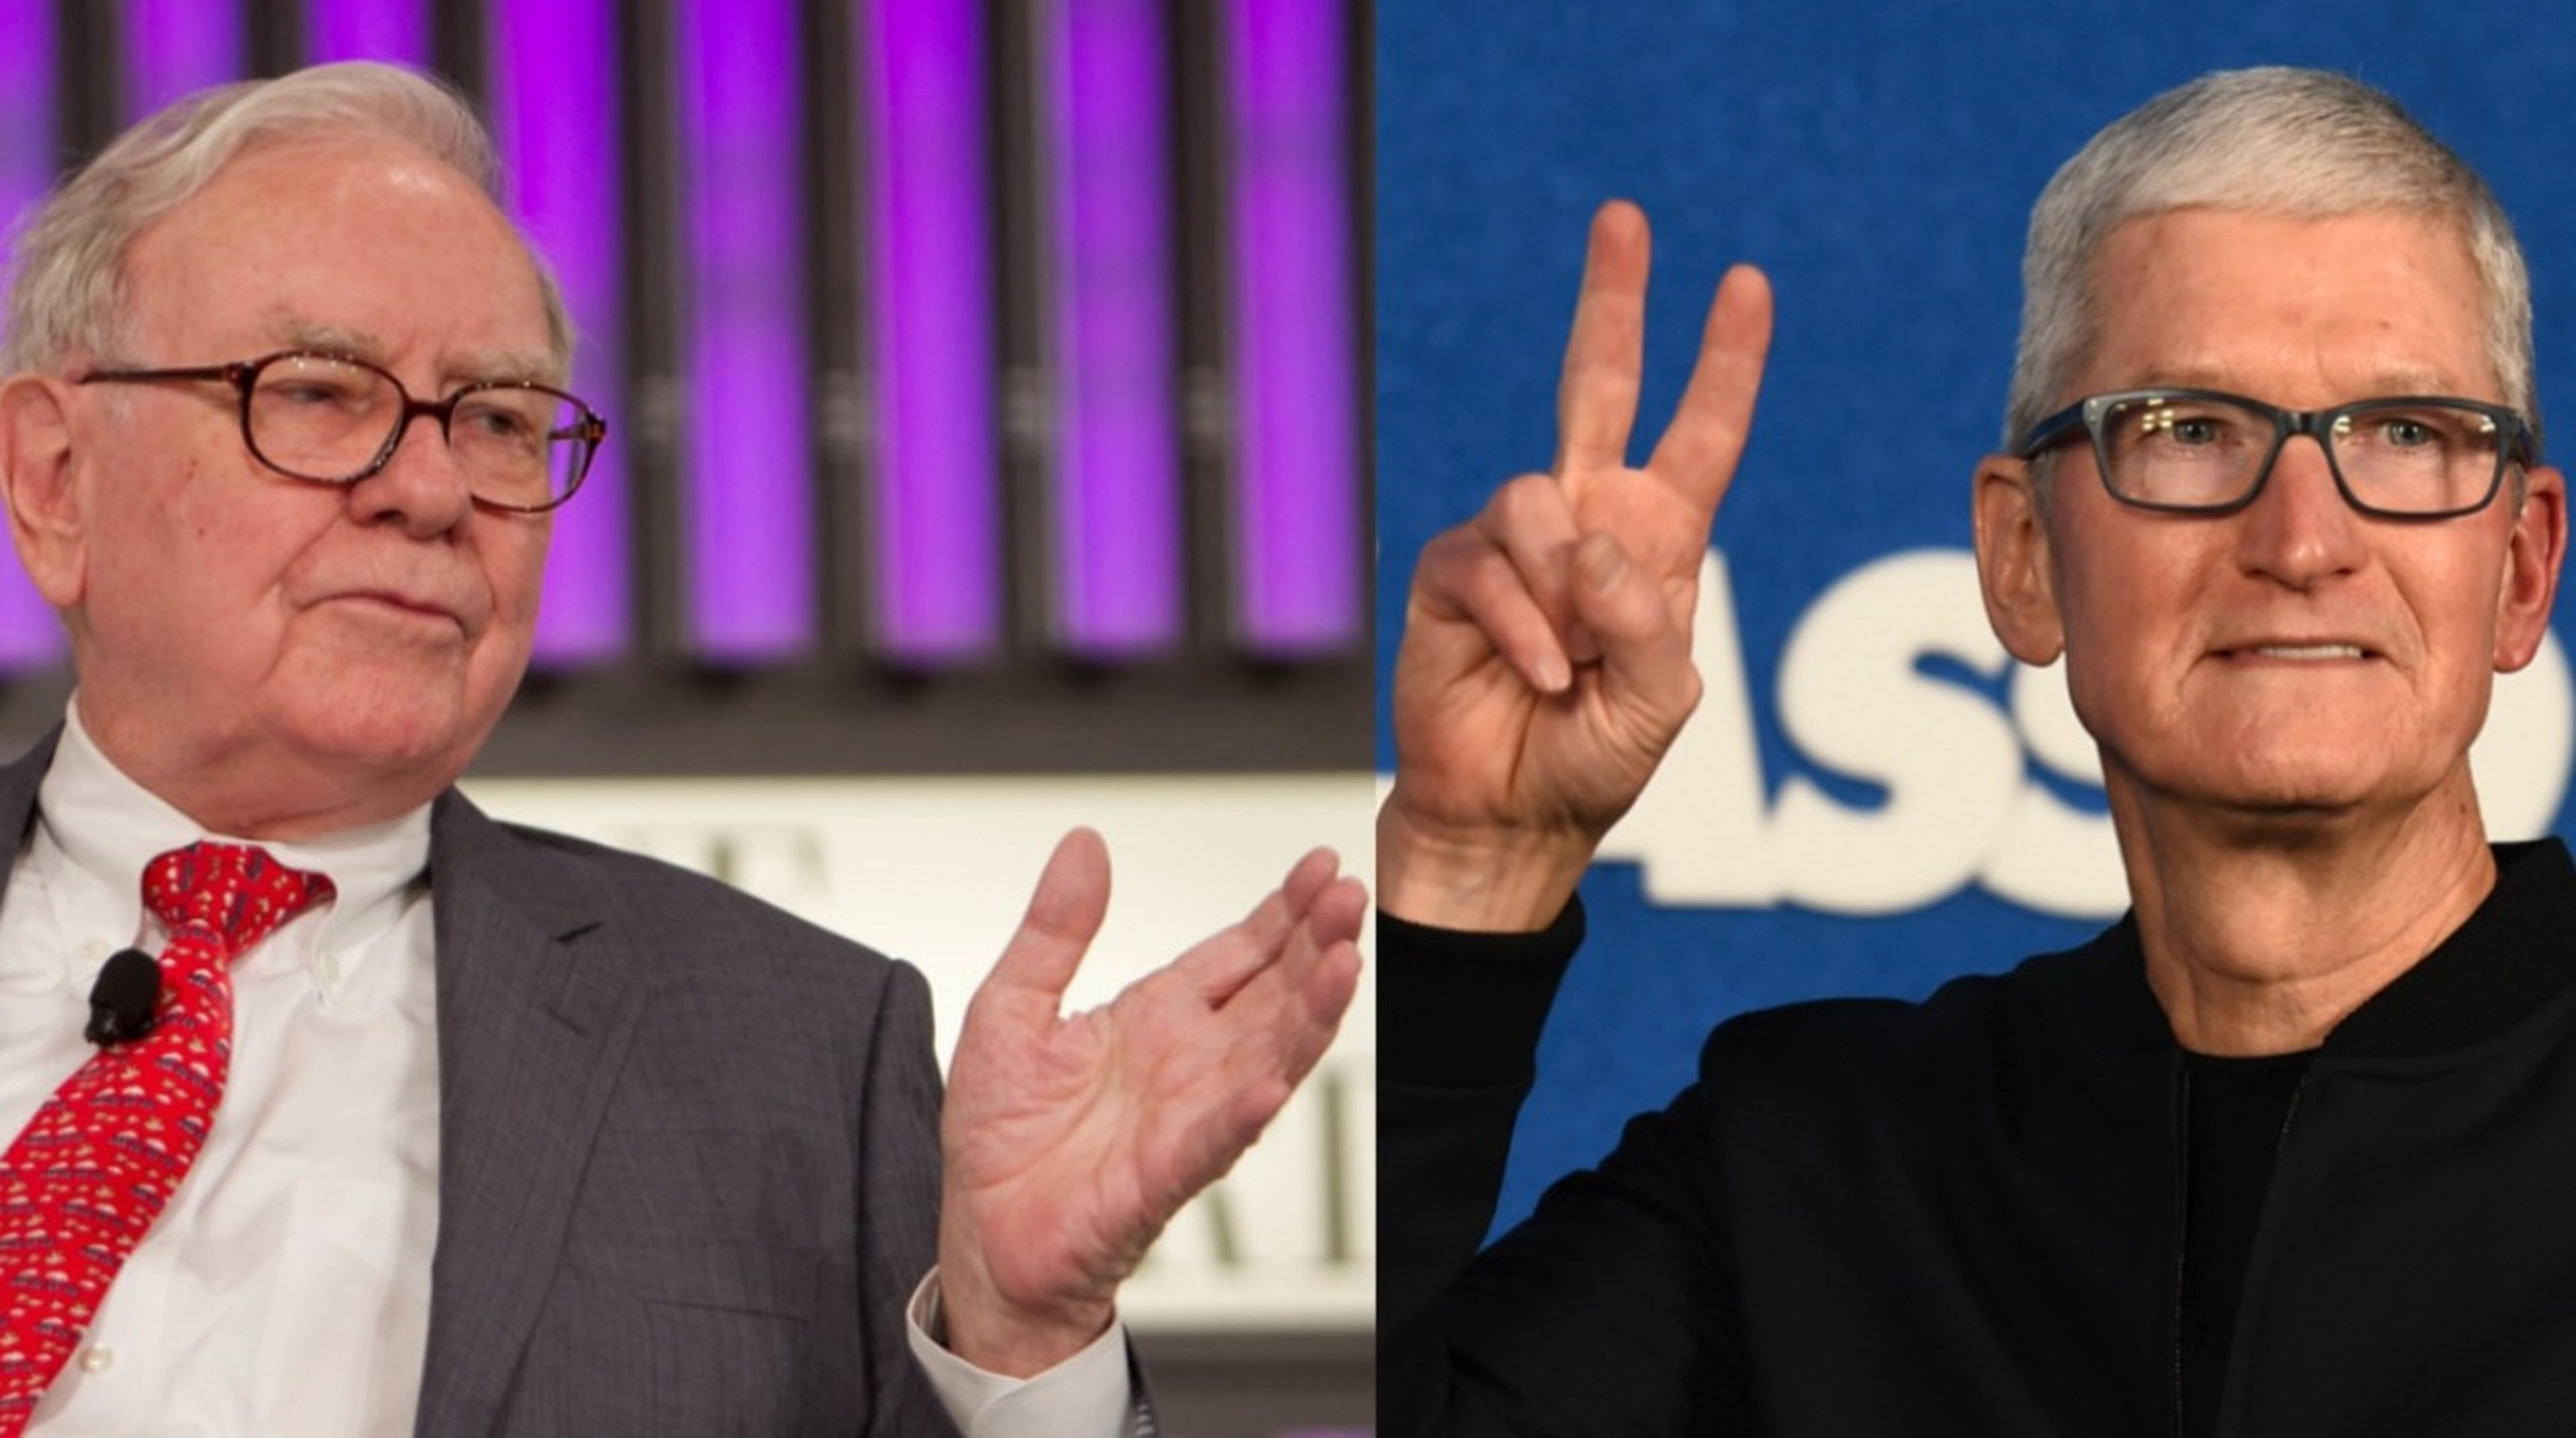 El sabio consejo de Warren Buffett que Steve Jobs rechazó y Tim Cook no dejó escapar